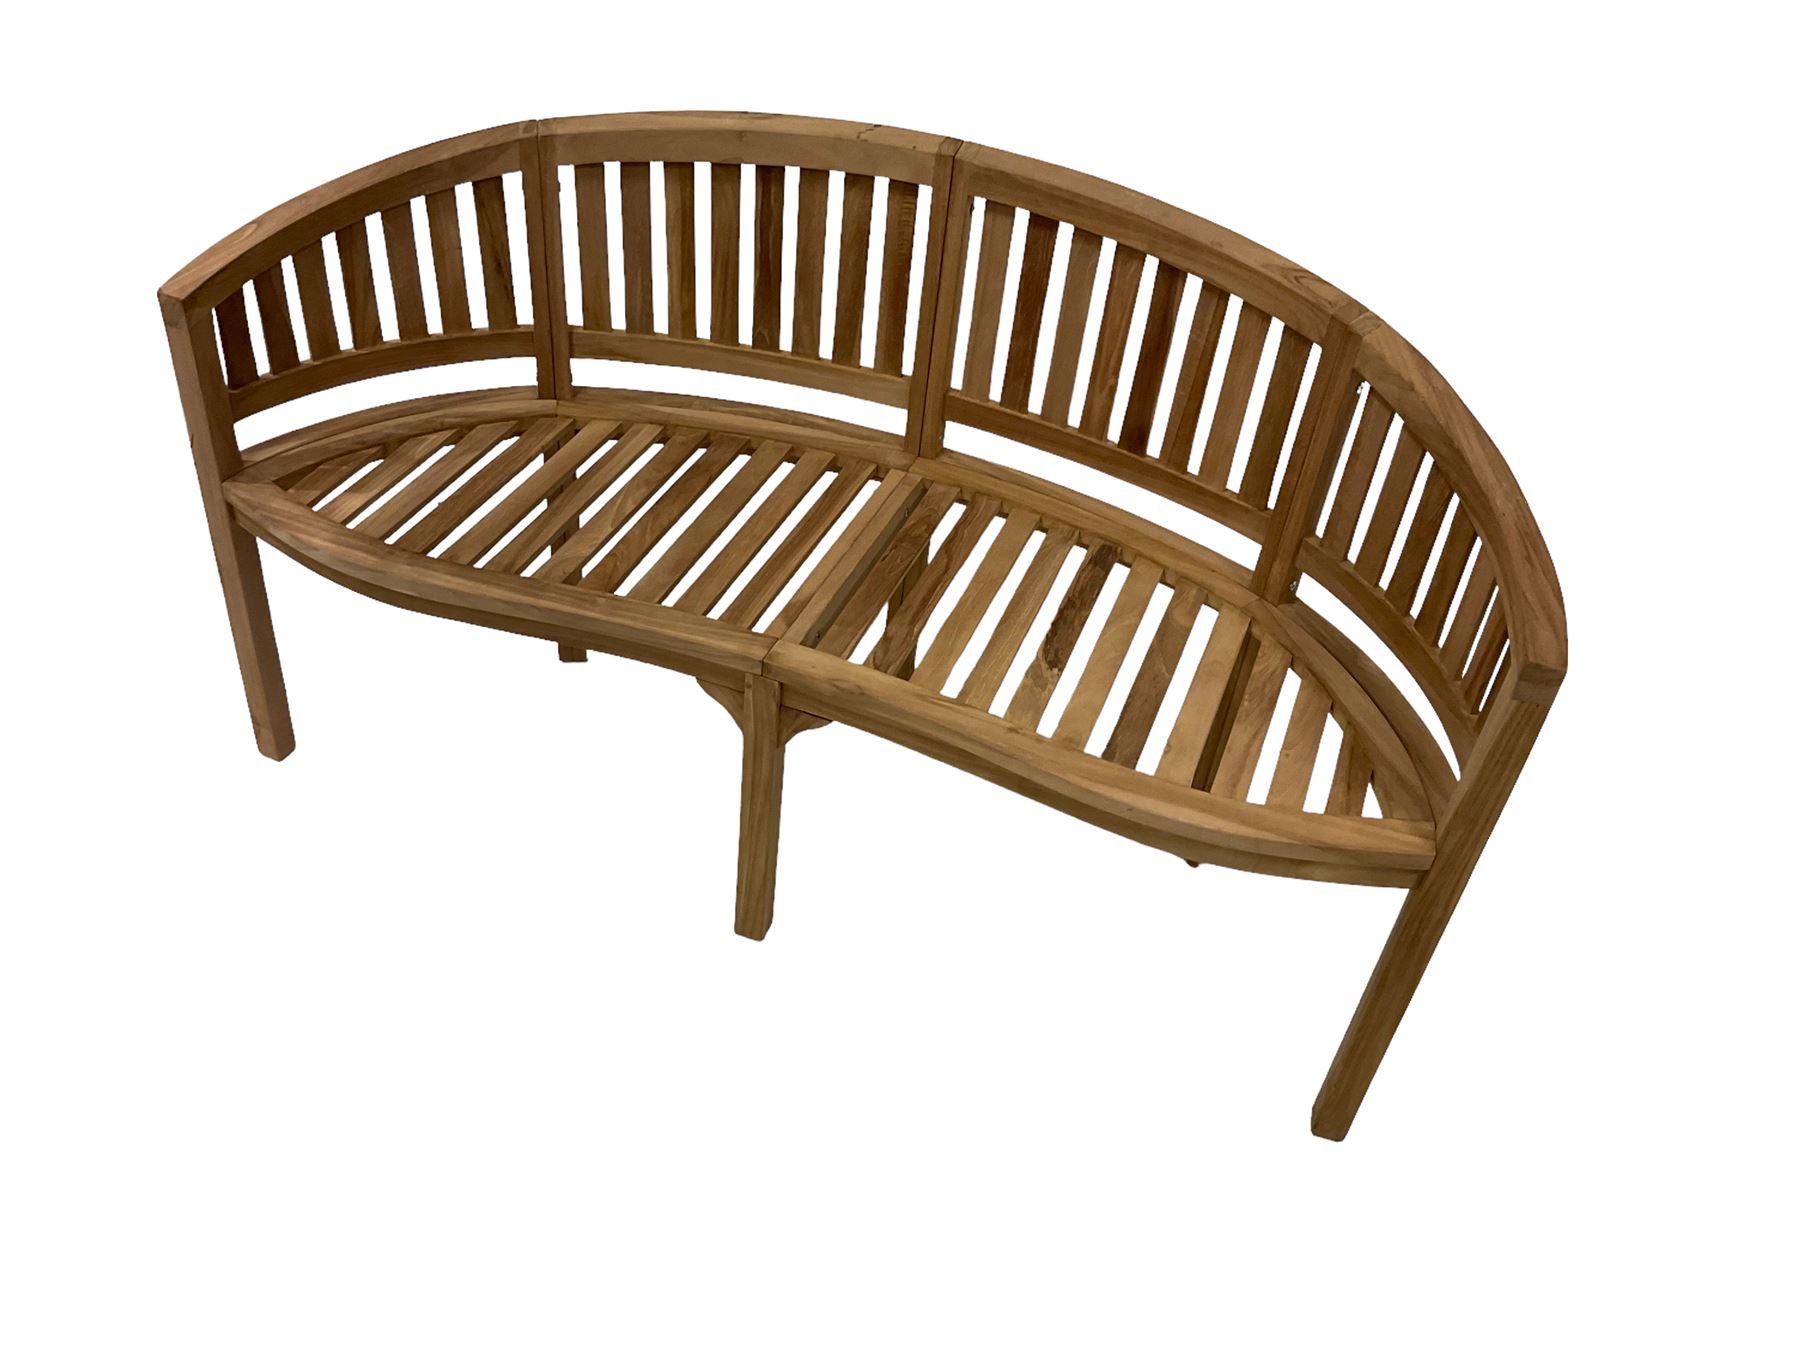 Solid teak garden bench - Image 4 of 4